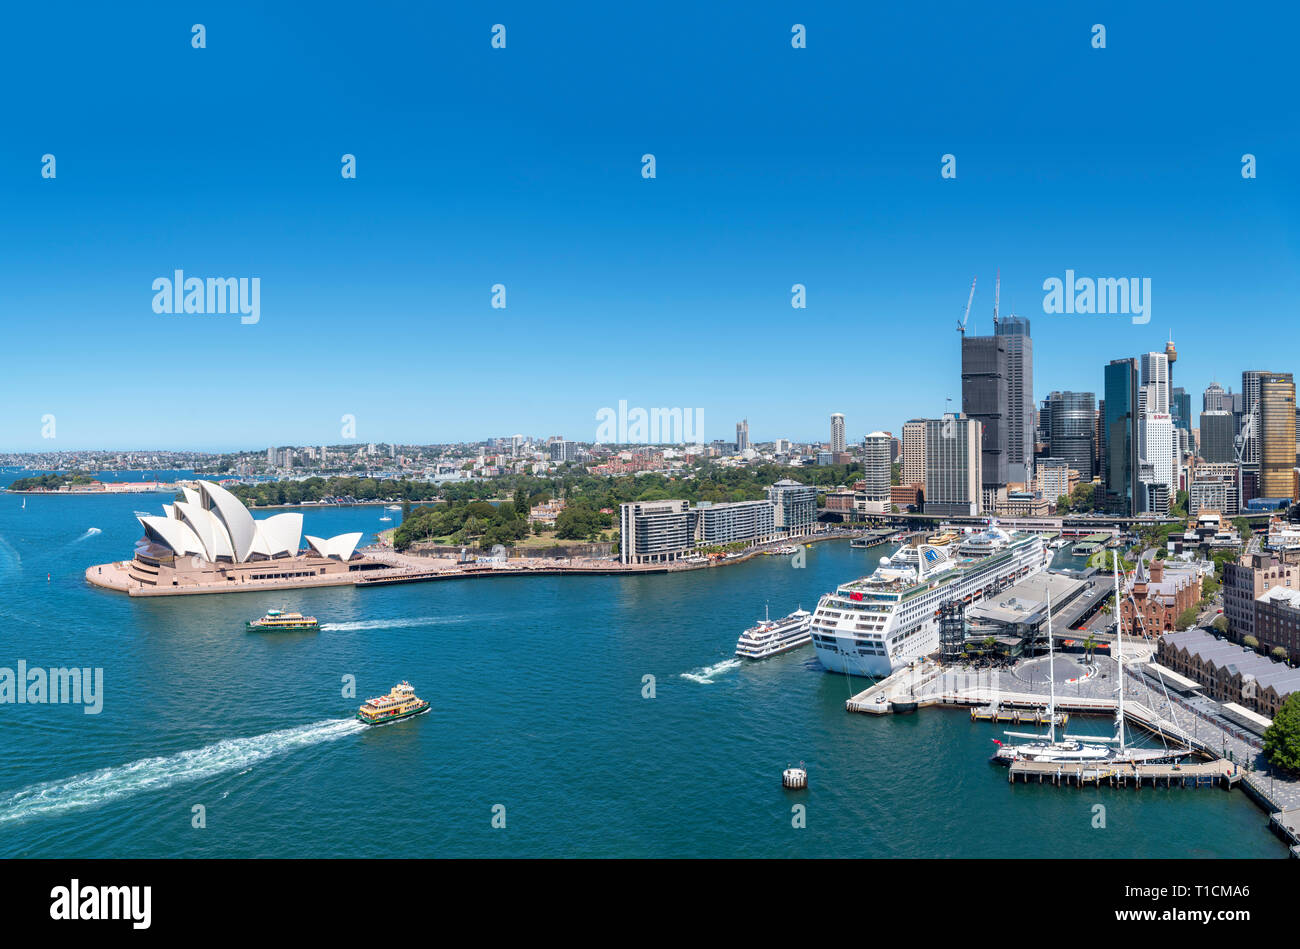 L'Opéra de Sydney, Circular Quay et le quartier central des affaires (CBD) vue de Sydney Harbour Bridge, Sydney, Australie Banque D'Images